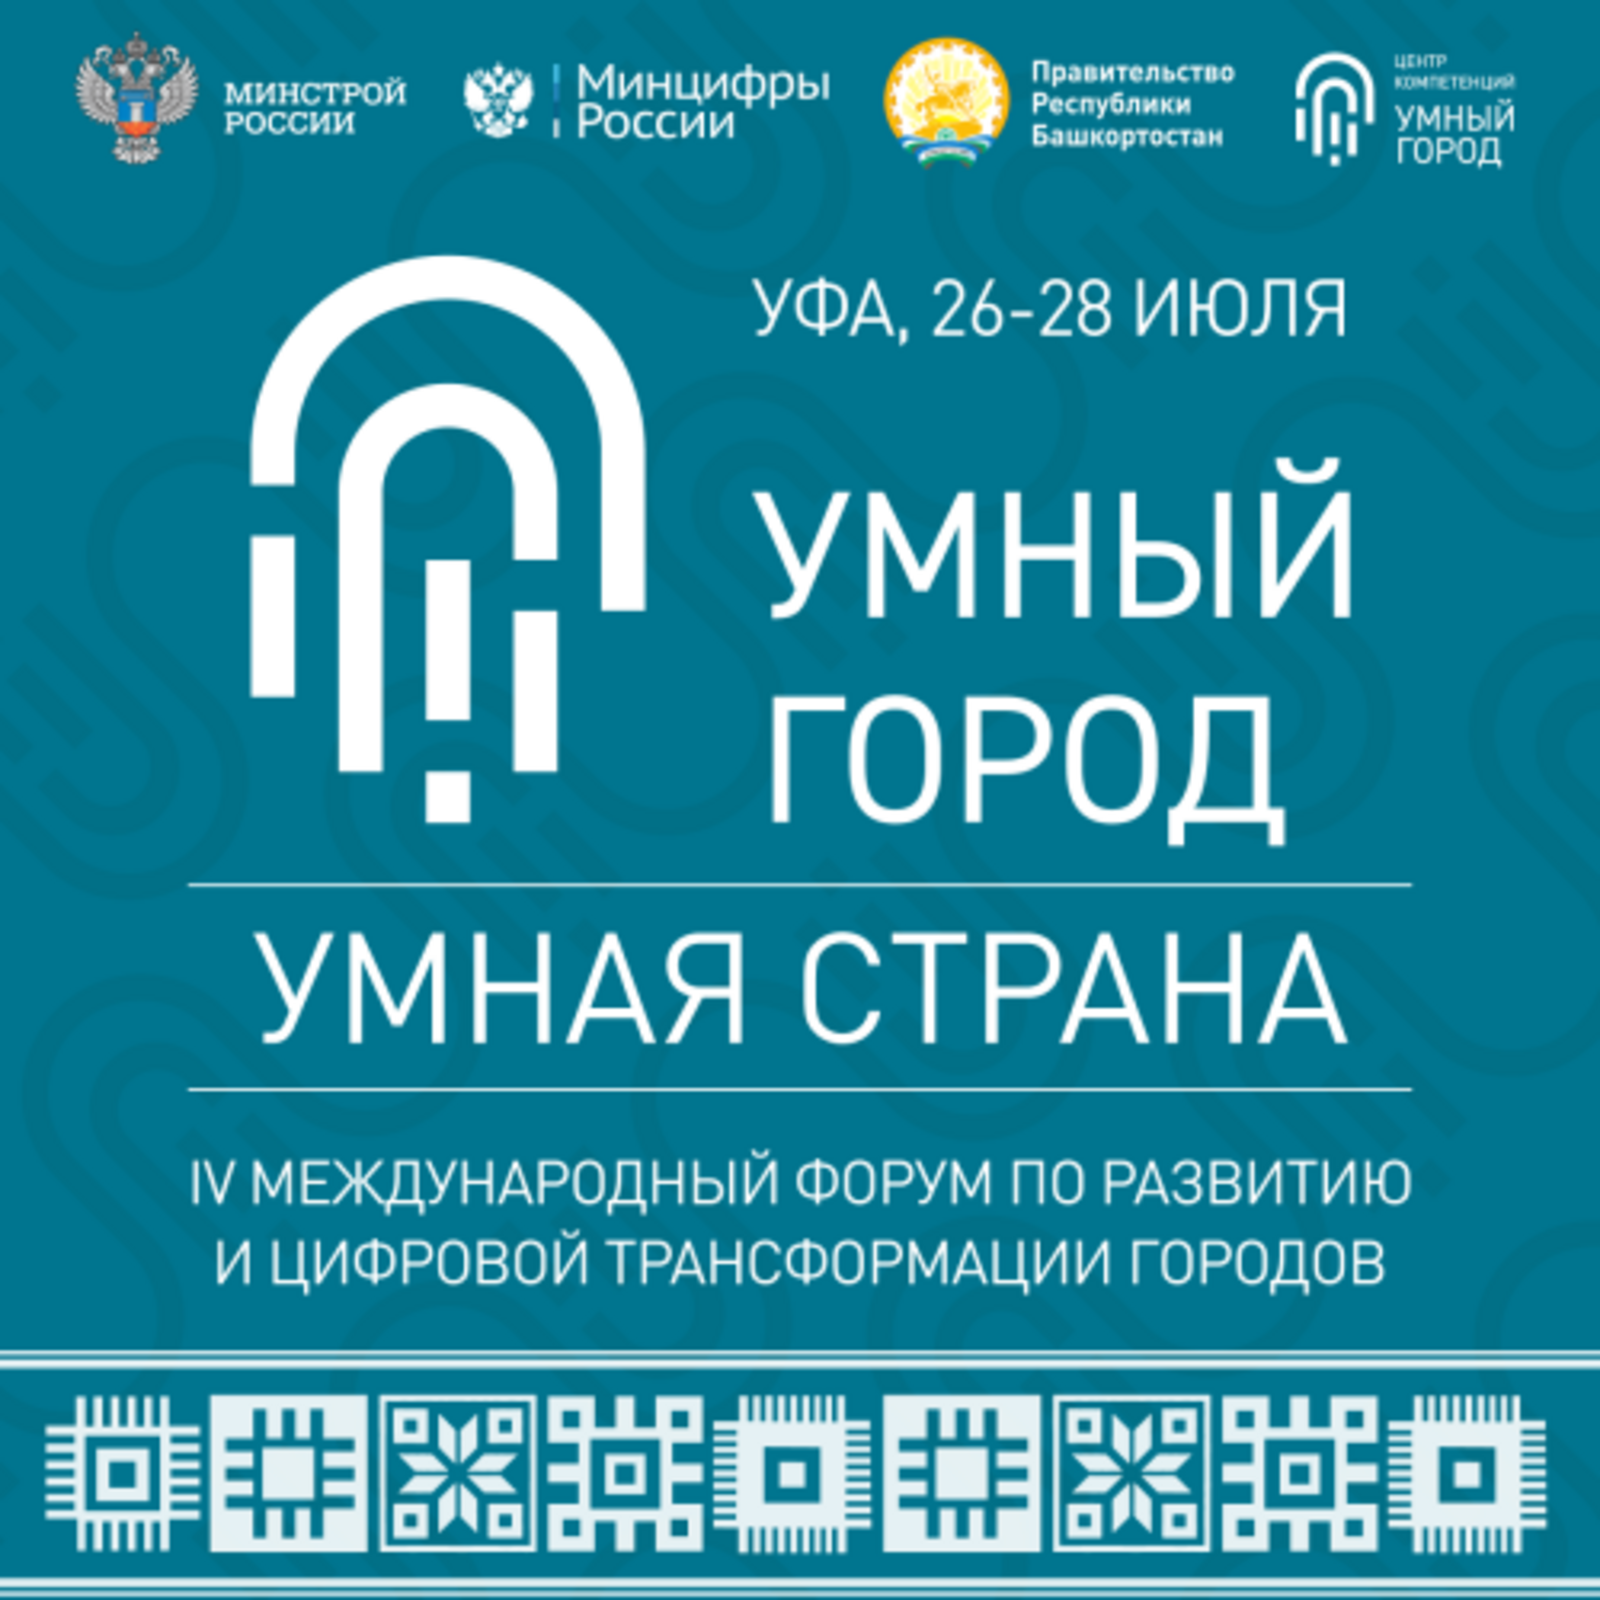 В рамках форума «Умный город» Башкортостан представит свои наработки в сфере цифровых технологий городского хозяйства